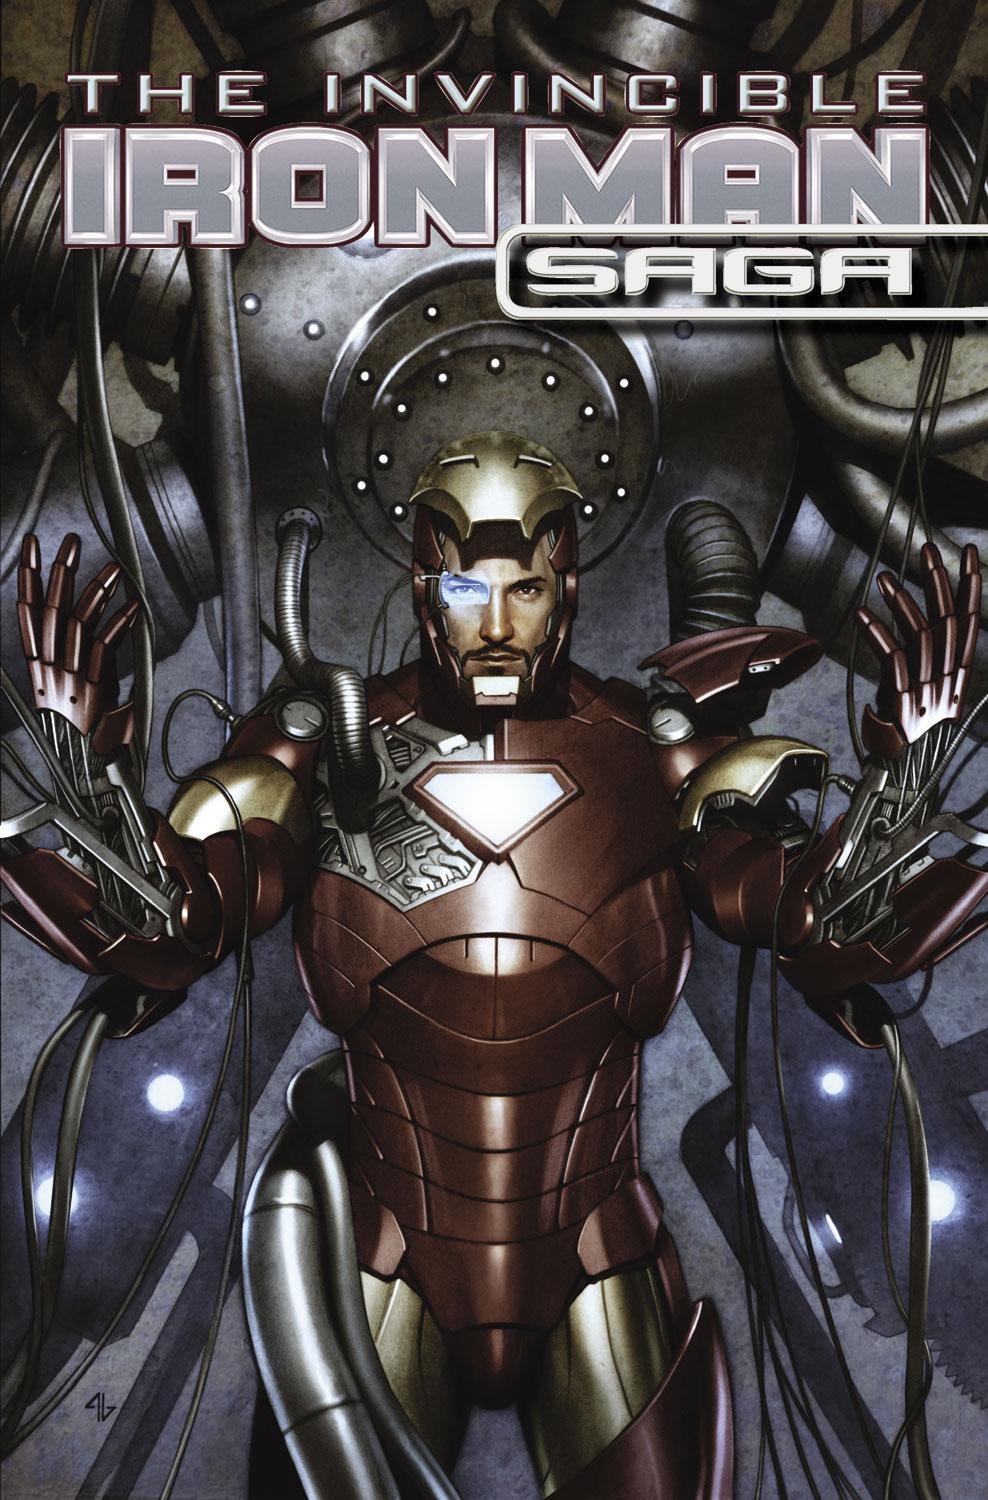 The Invincible Iron Man Saga (2009) #1